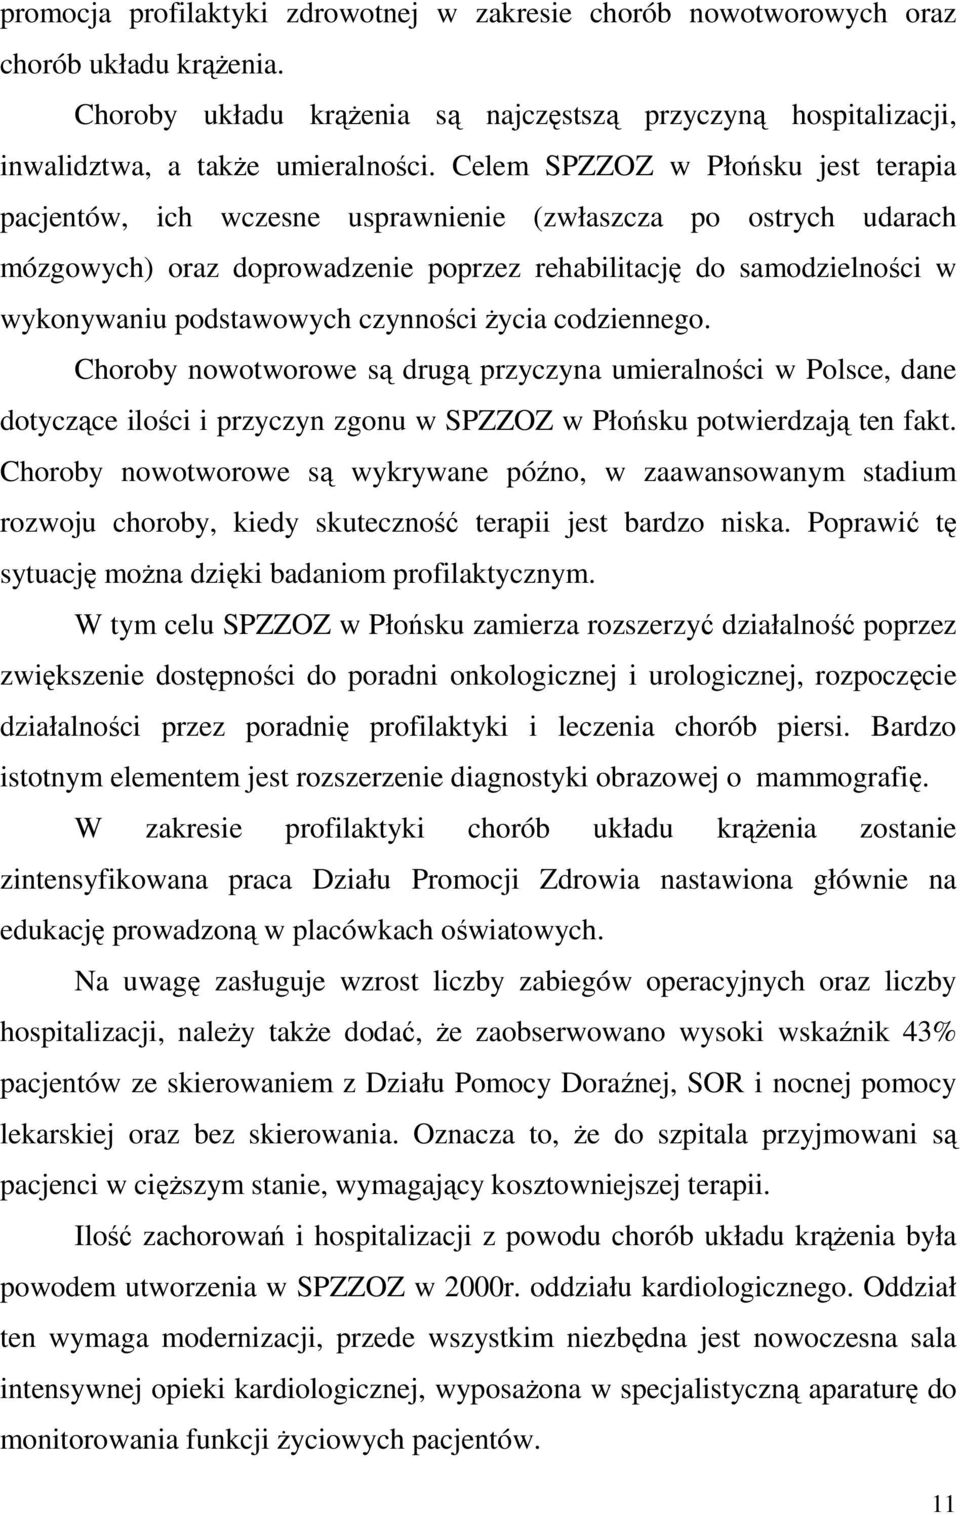 czynności Ŝycia codziennego. Choroby nowotworowe są drugą przyczyna umieralności w Polsce, dane dotyczące ilości i przyczyn zgonu w SPZZOZ w Płońsku potwierdzają ten fakt.